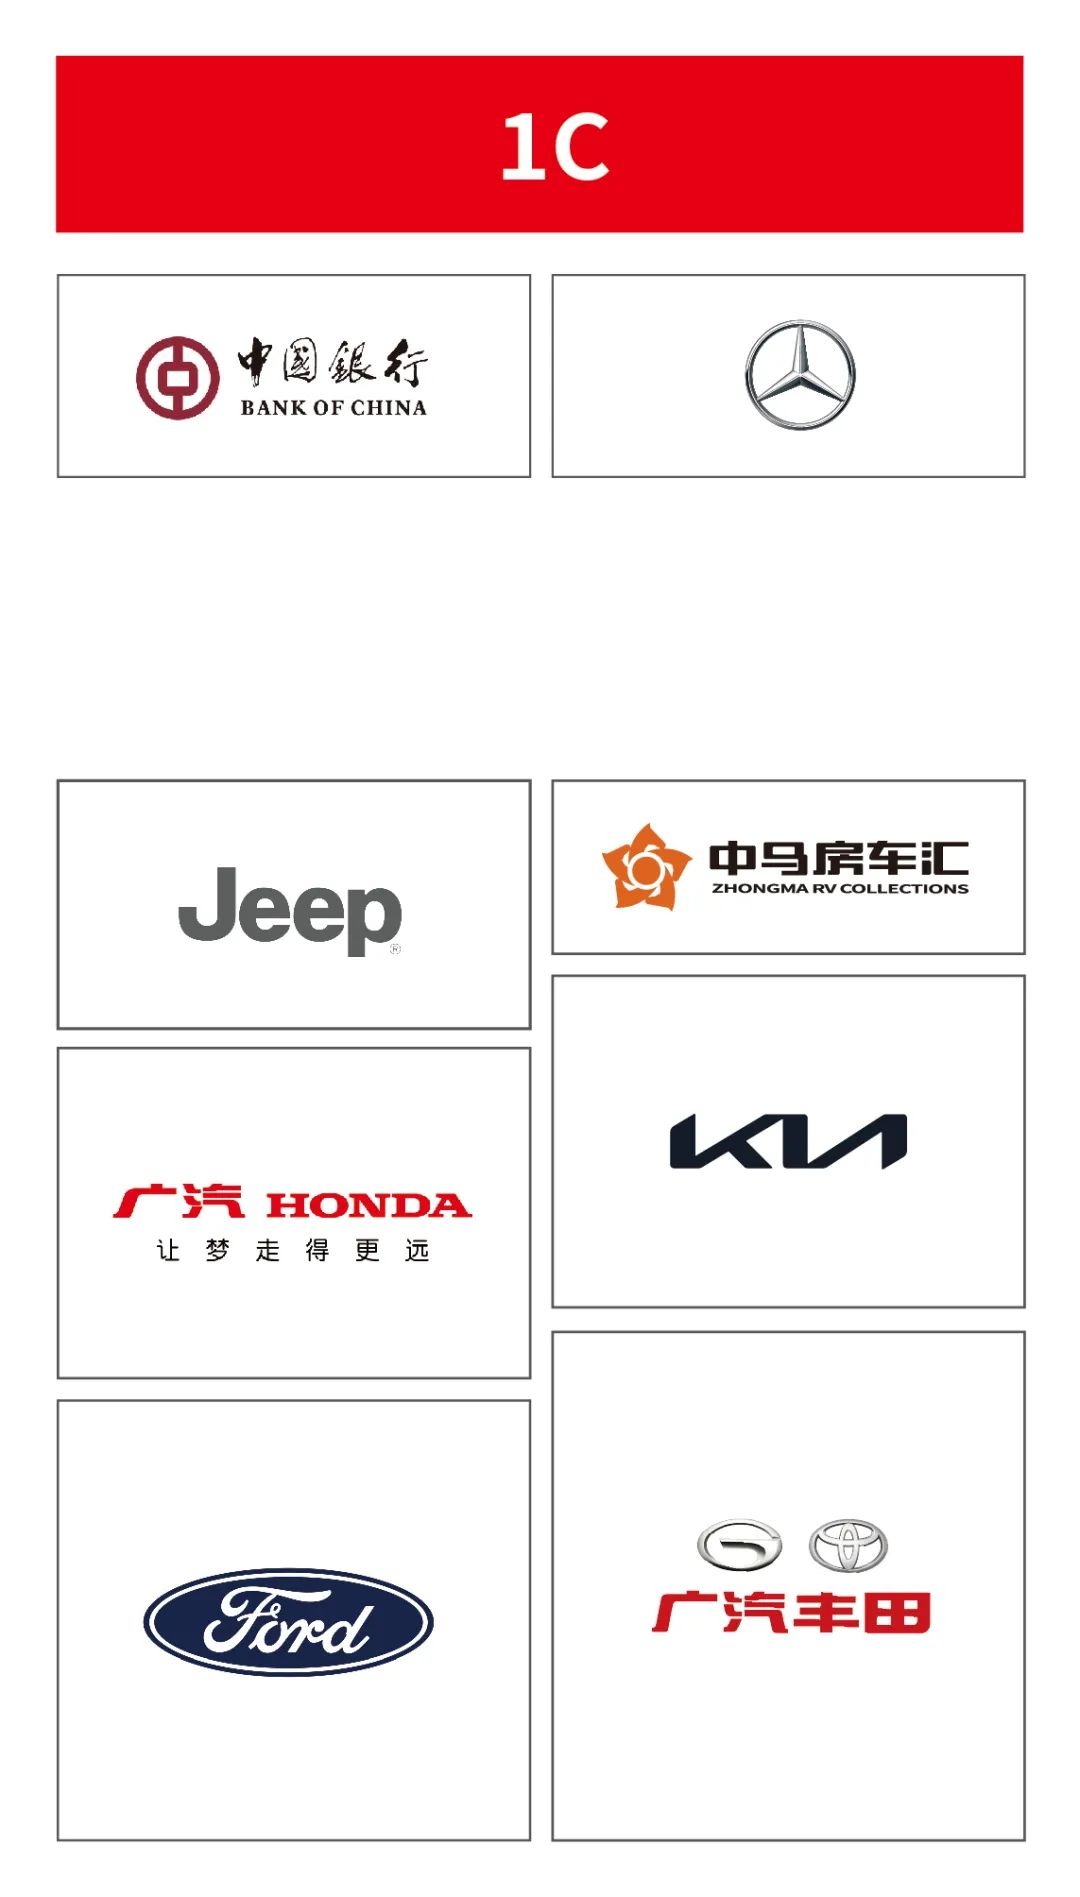 郑州国际车展展位图